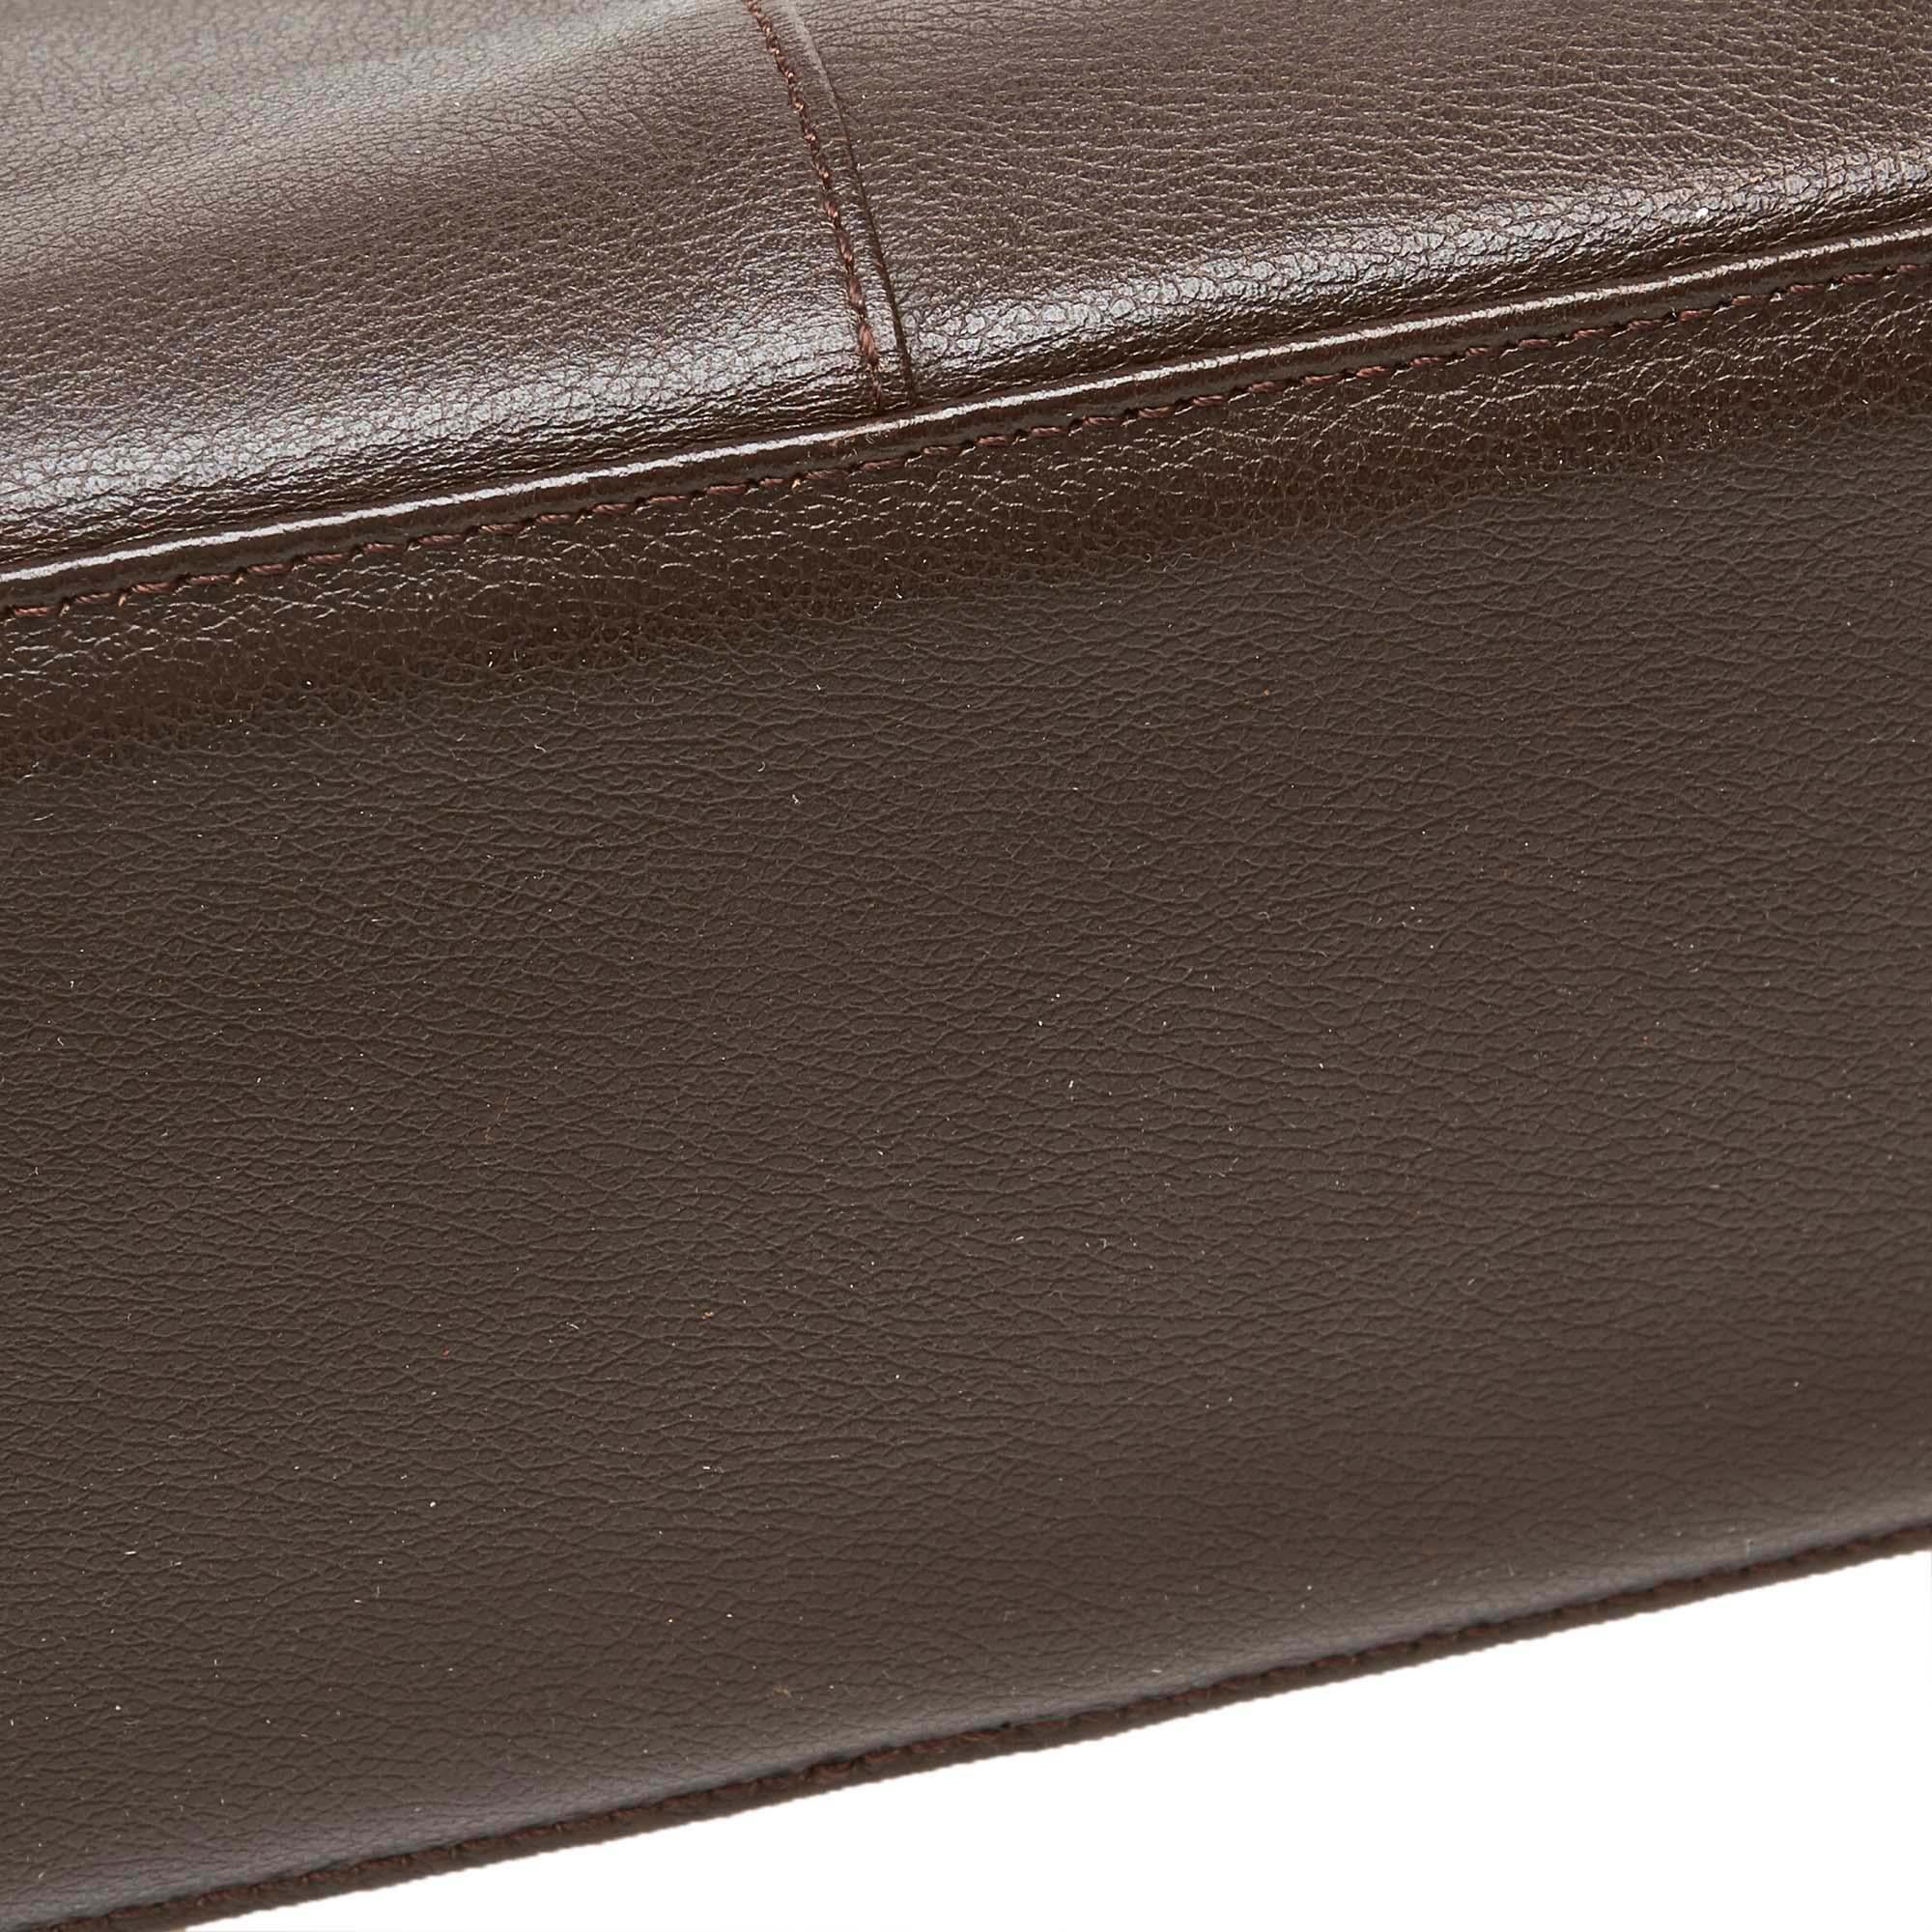 Vintage Authentic Burberry Black Leather Handbag United Kingdom MEDIUM  9